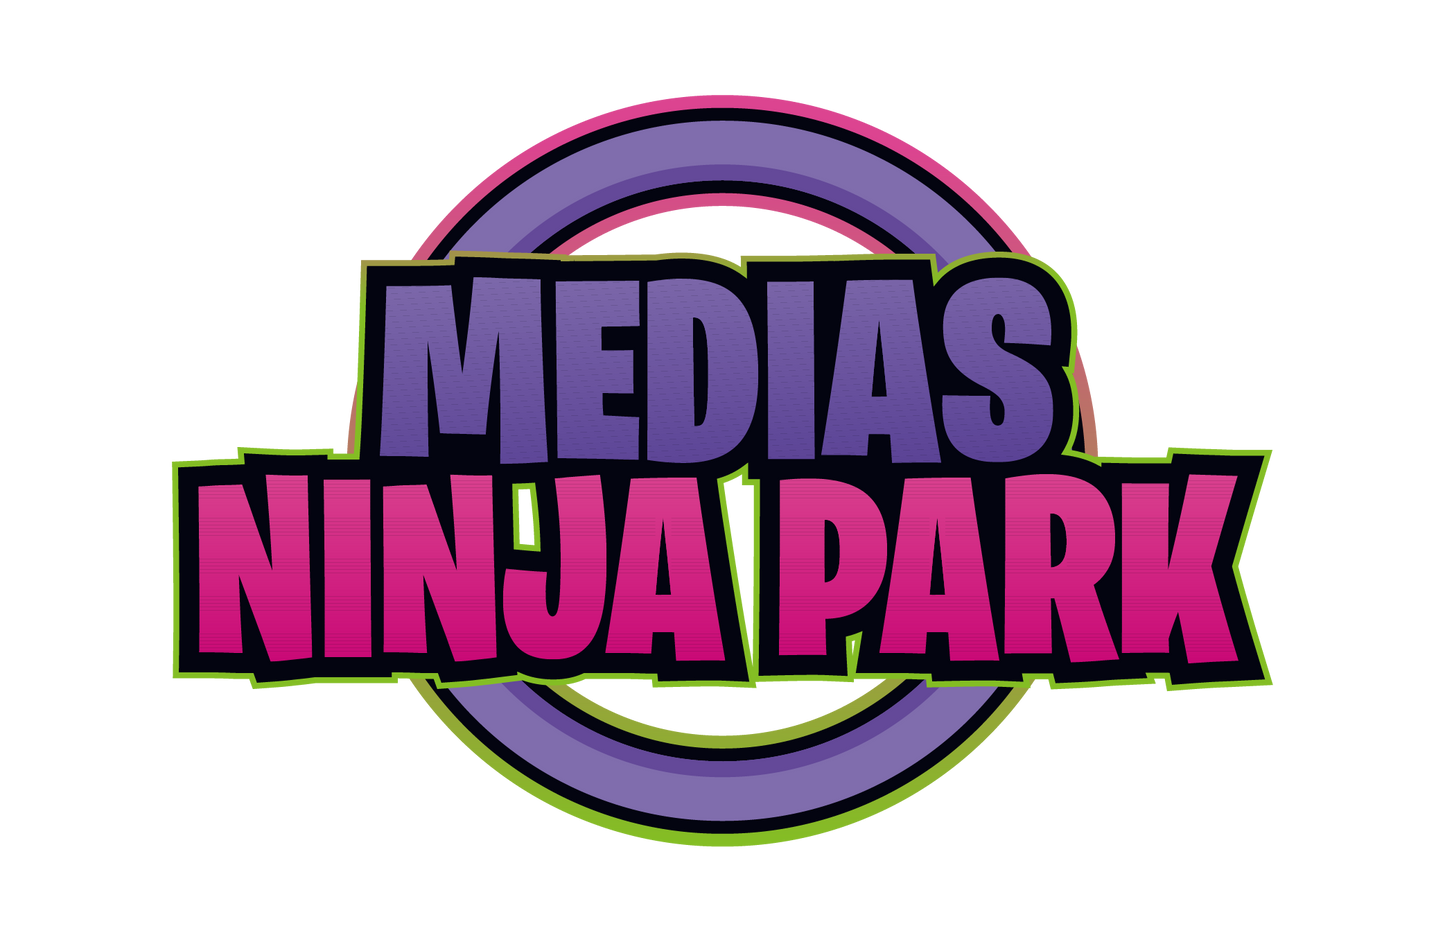 Medias Ninja Park